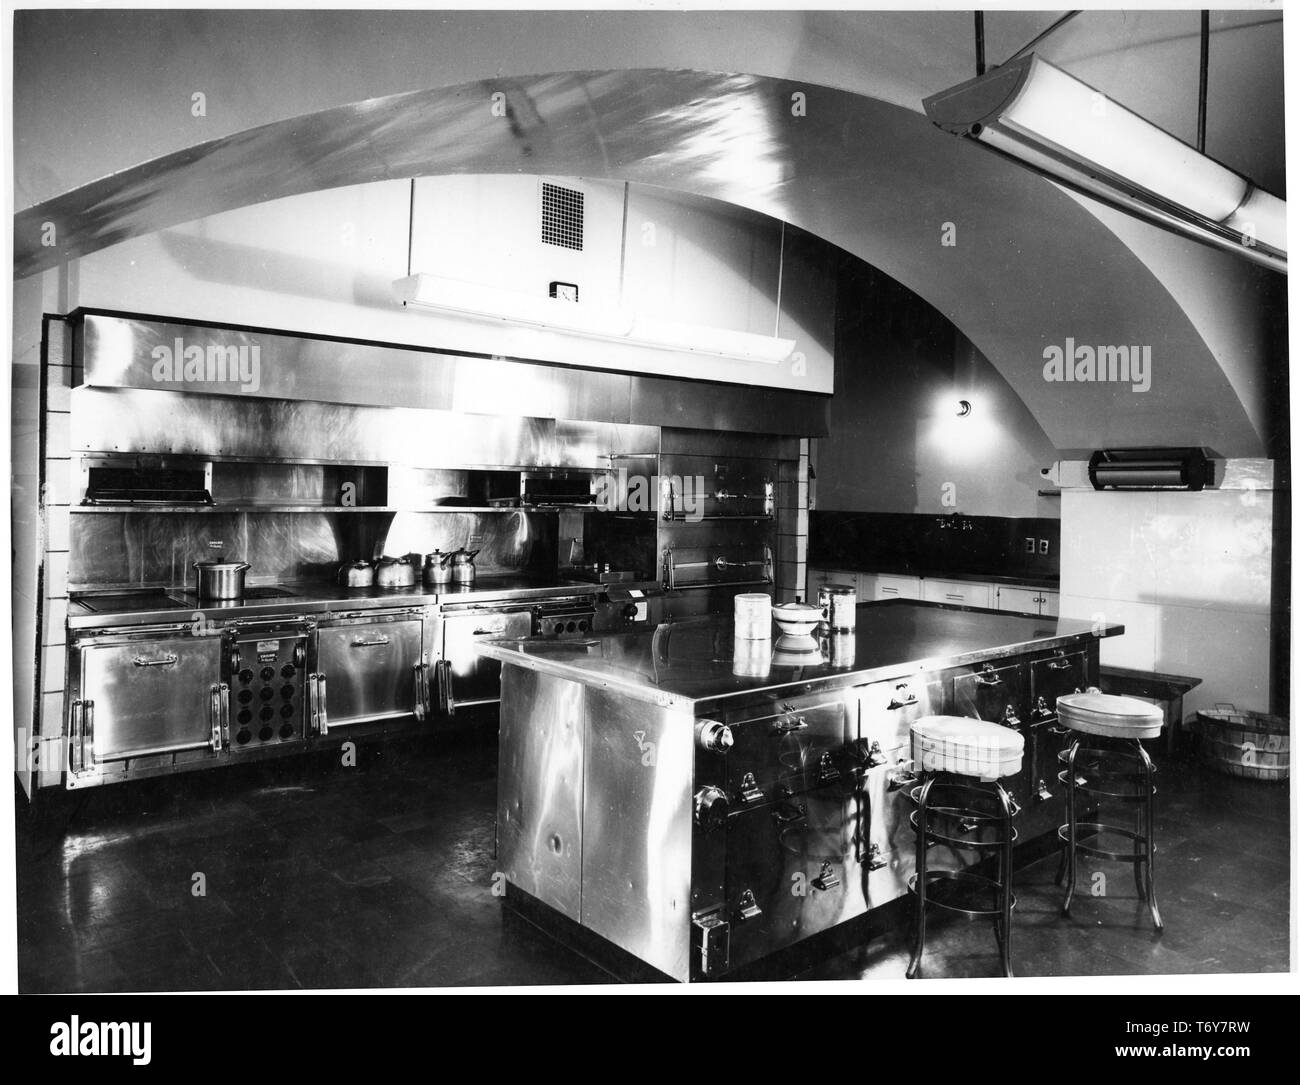 Leggermente angolata vista di un arco che si estende su un area cucina al piano inferiore della Casa Bianca di Washington, Distretto di Columbia, 21 gennaio, 1948. Immagine cortesia archivi nazionali. () Foto Stock